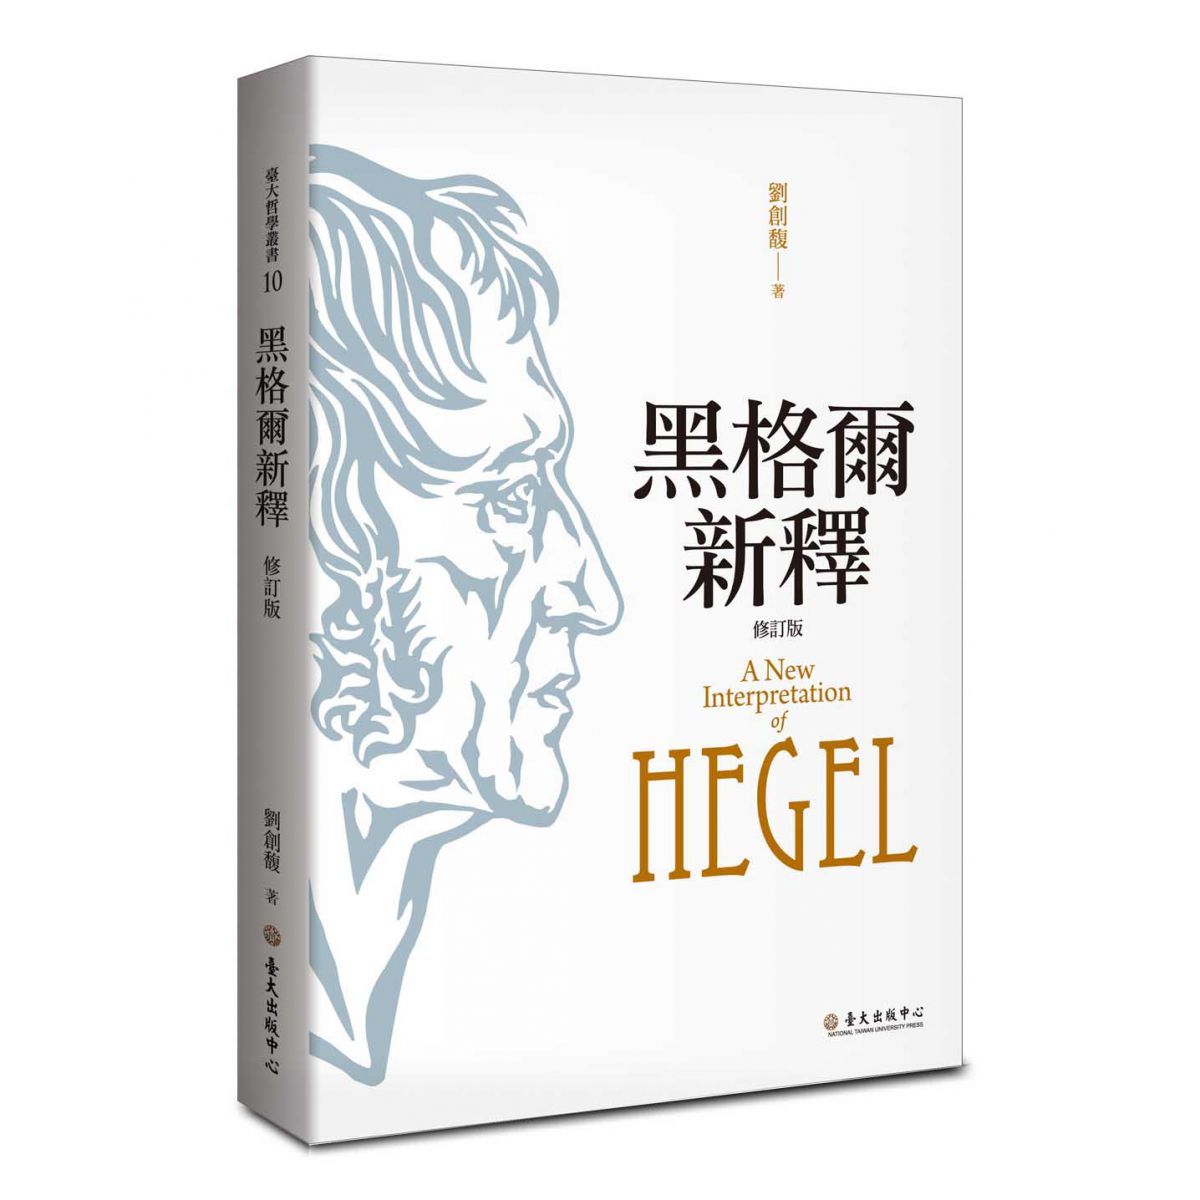 《黑格爾新釋（修訂版）》宏觀地勾畫出黑格爾的系統框架